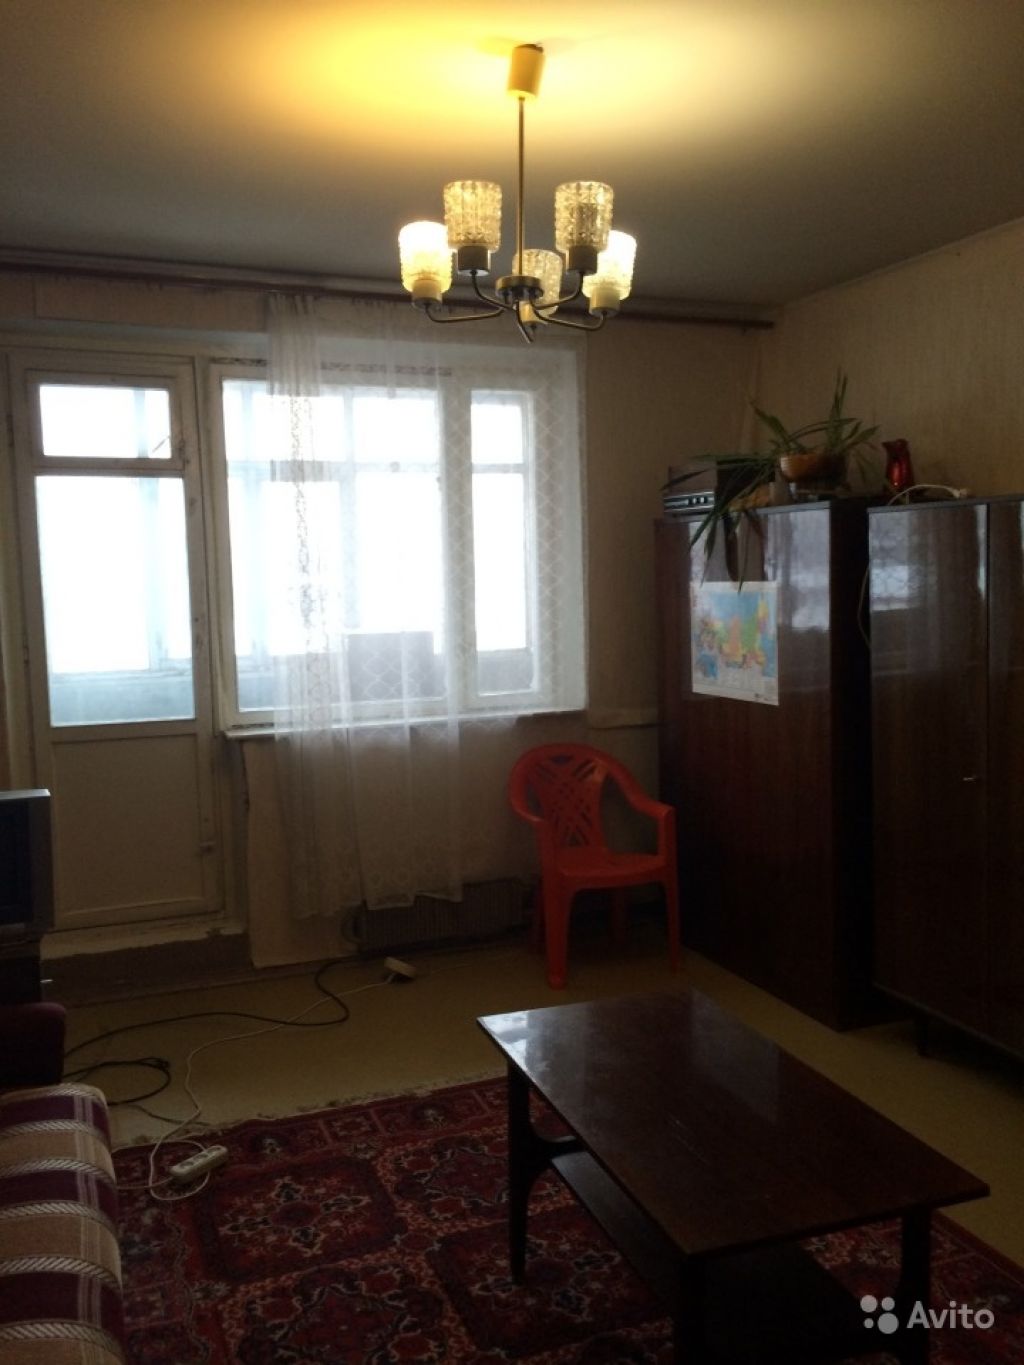 Продам квартиру 1-к квартира 39 м² на 9 этаже 12-этажного панельного дома в Москве. Фото 1